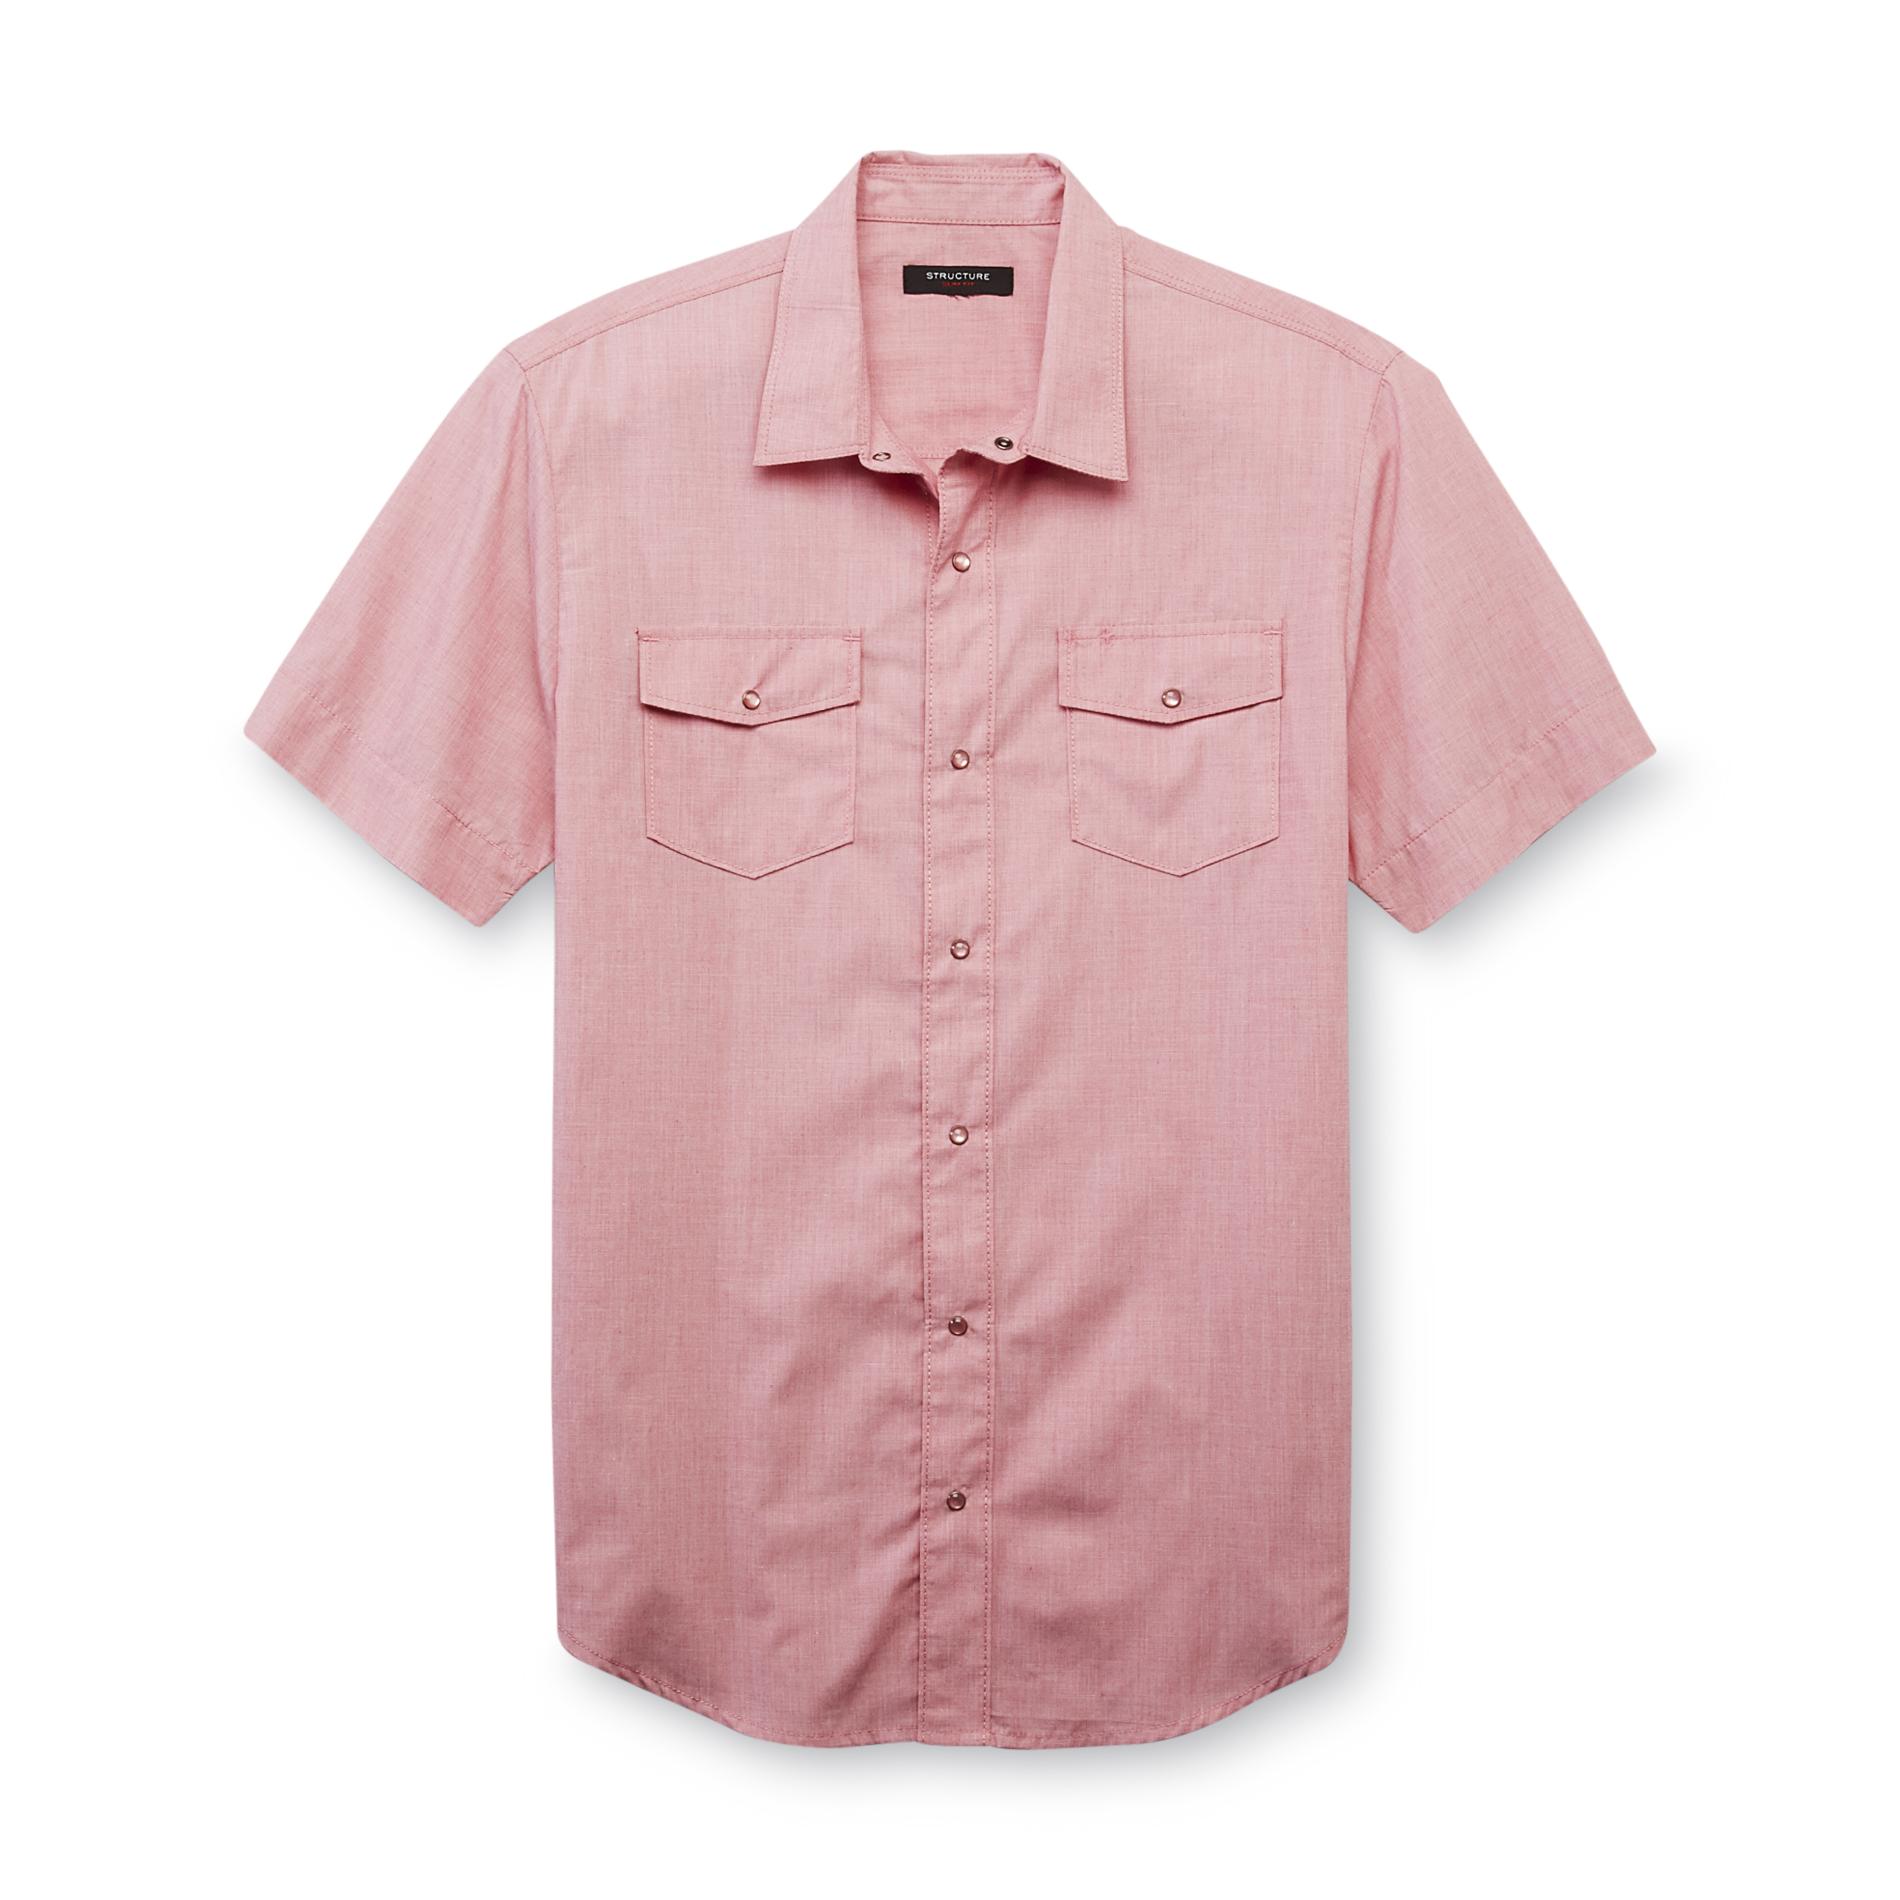 Structure Men's Slim-Fit Dress Shirt - Snap Front